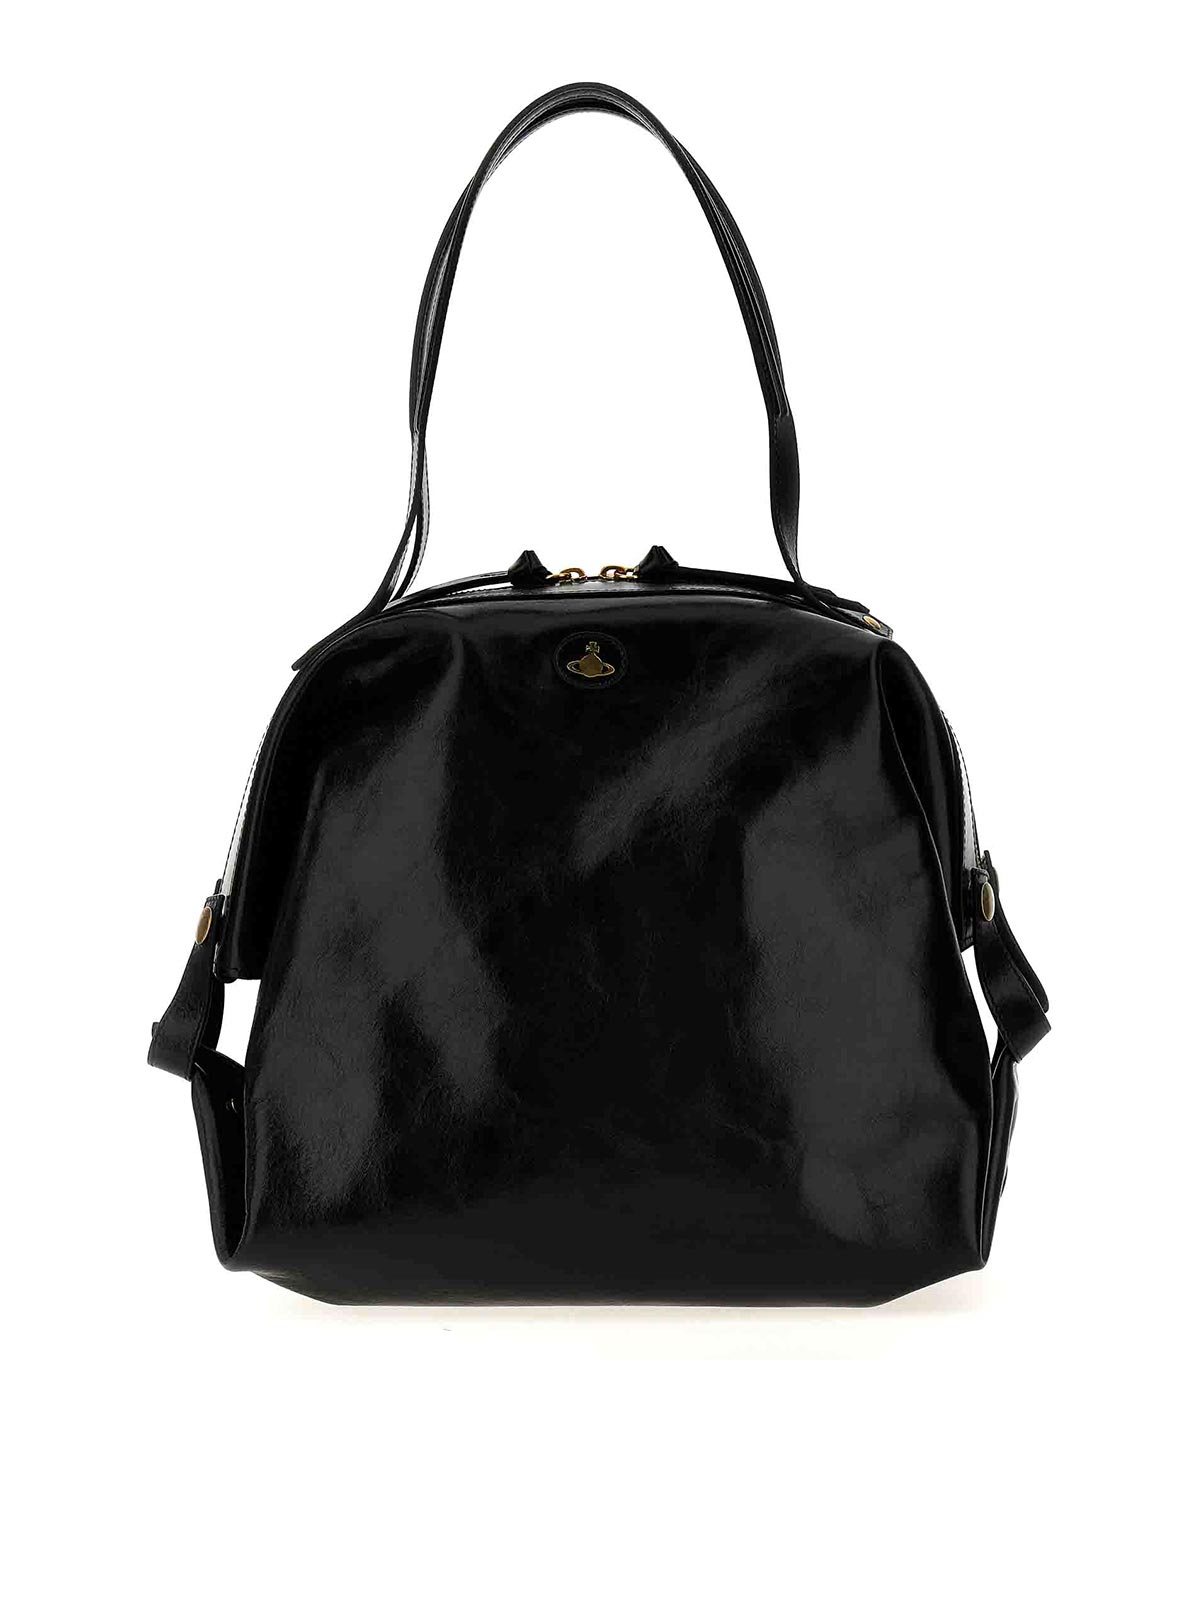 Vivienne Westwood Mara Holdall Handbag In Black